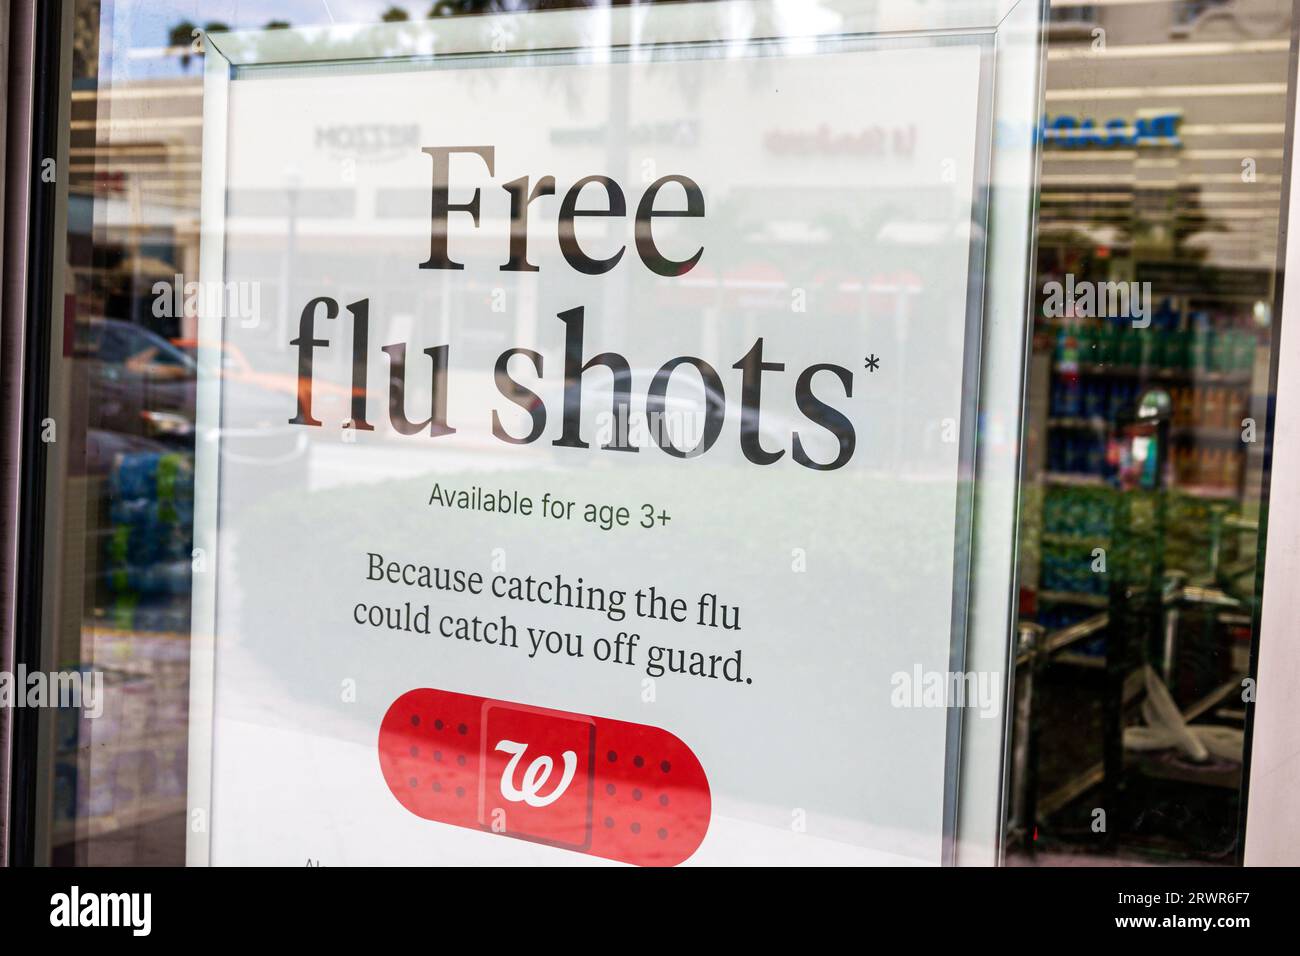 Miami Beach Florida, Walgreens Apotheke Drogerie, innen innen drinnen, Schild Hinweis, kostenlose Grippeschutzimpfungen angeboten Promotion, Zeichen Informationen, Werbung Stockfoto